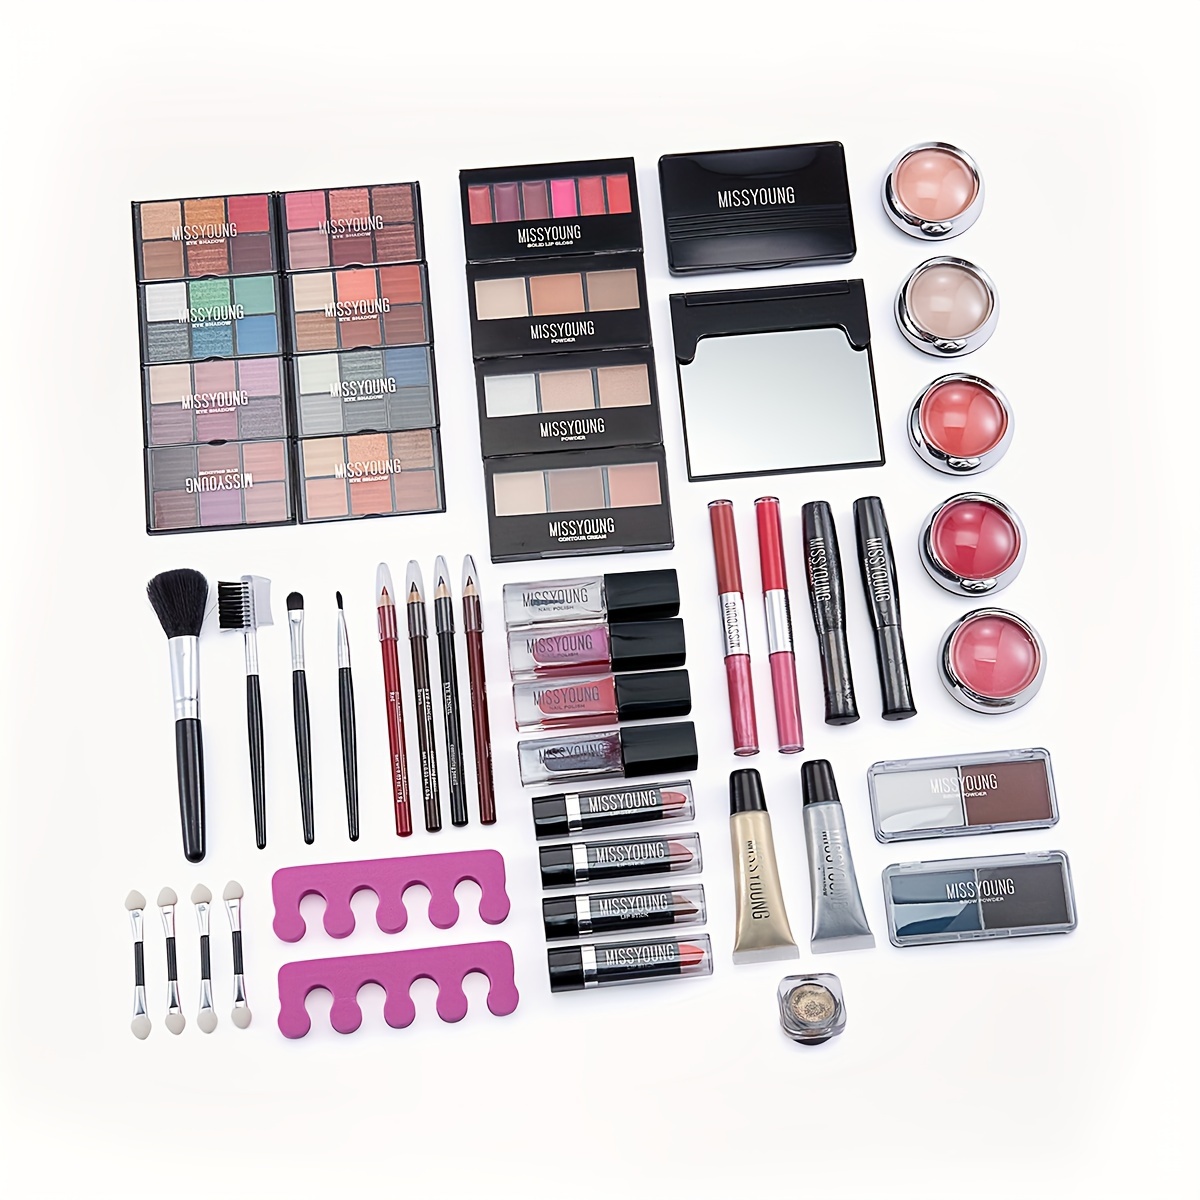 All-Pro Makeup Kit | Mehron Makeup